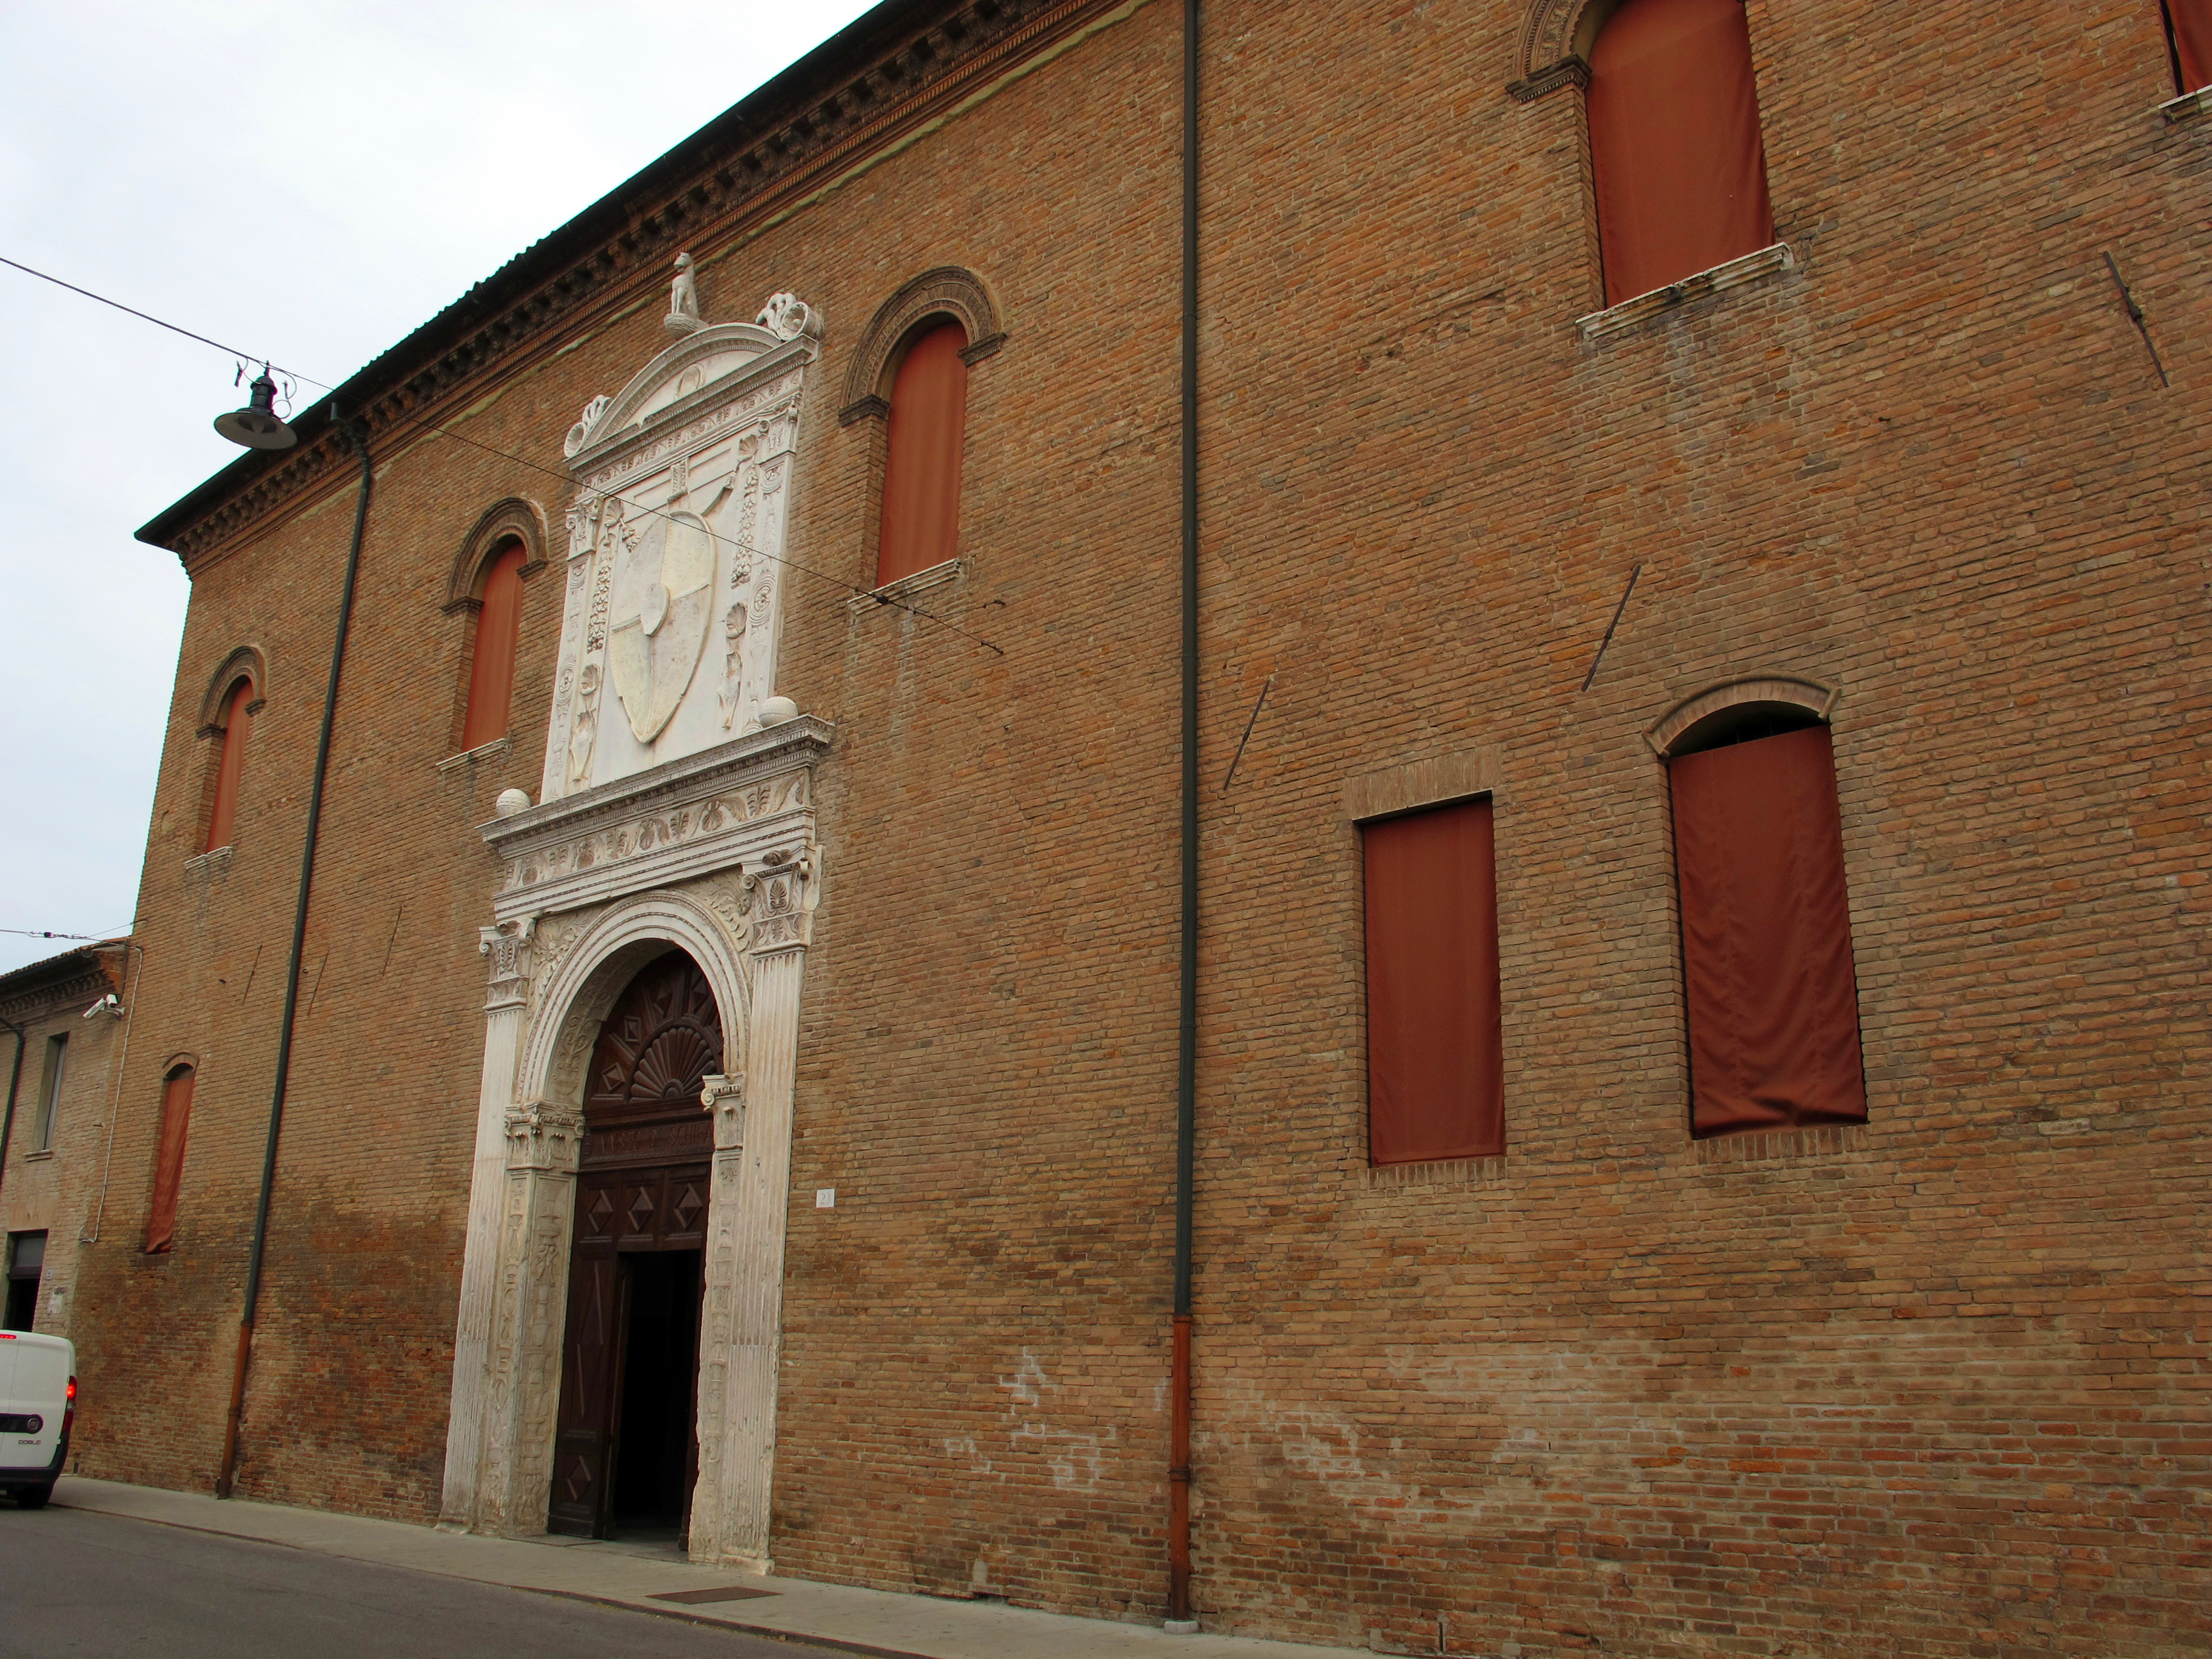 photo: https://upload.wikimedia.org/wikipedia/commons/b/bf/Palazzo_schifanoia%2C_ext.%2C_portale_maggiore_01.JPG